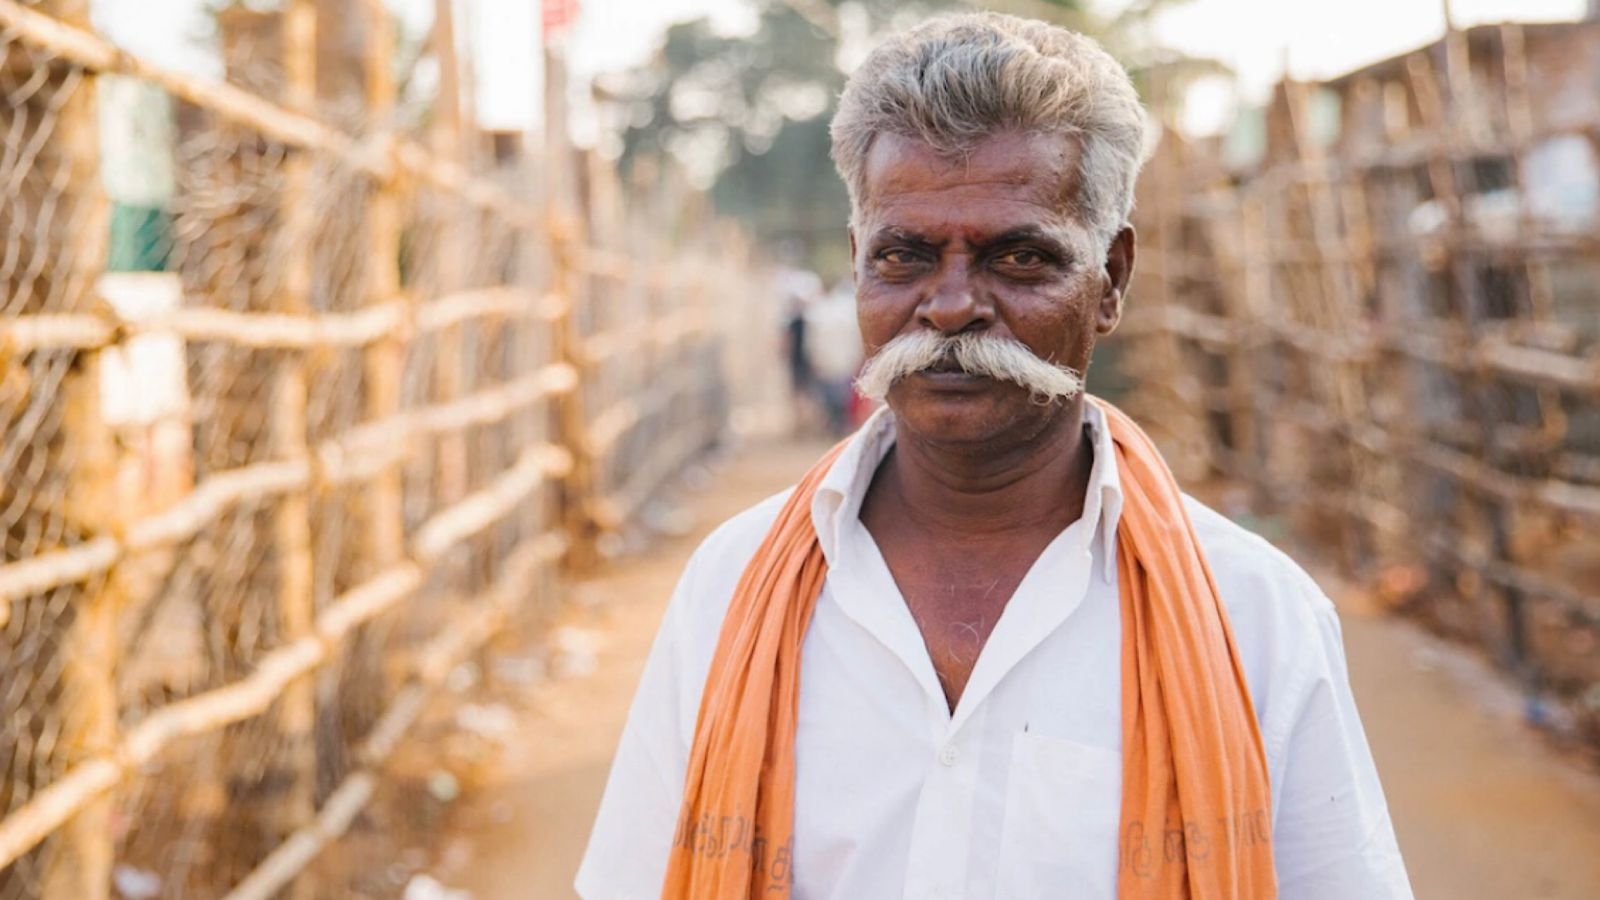 Detido sob falsa acusação, pastor distribui Bíblias e evangeliza em prisão na Índia